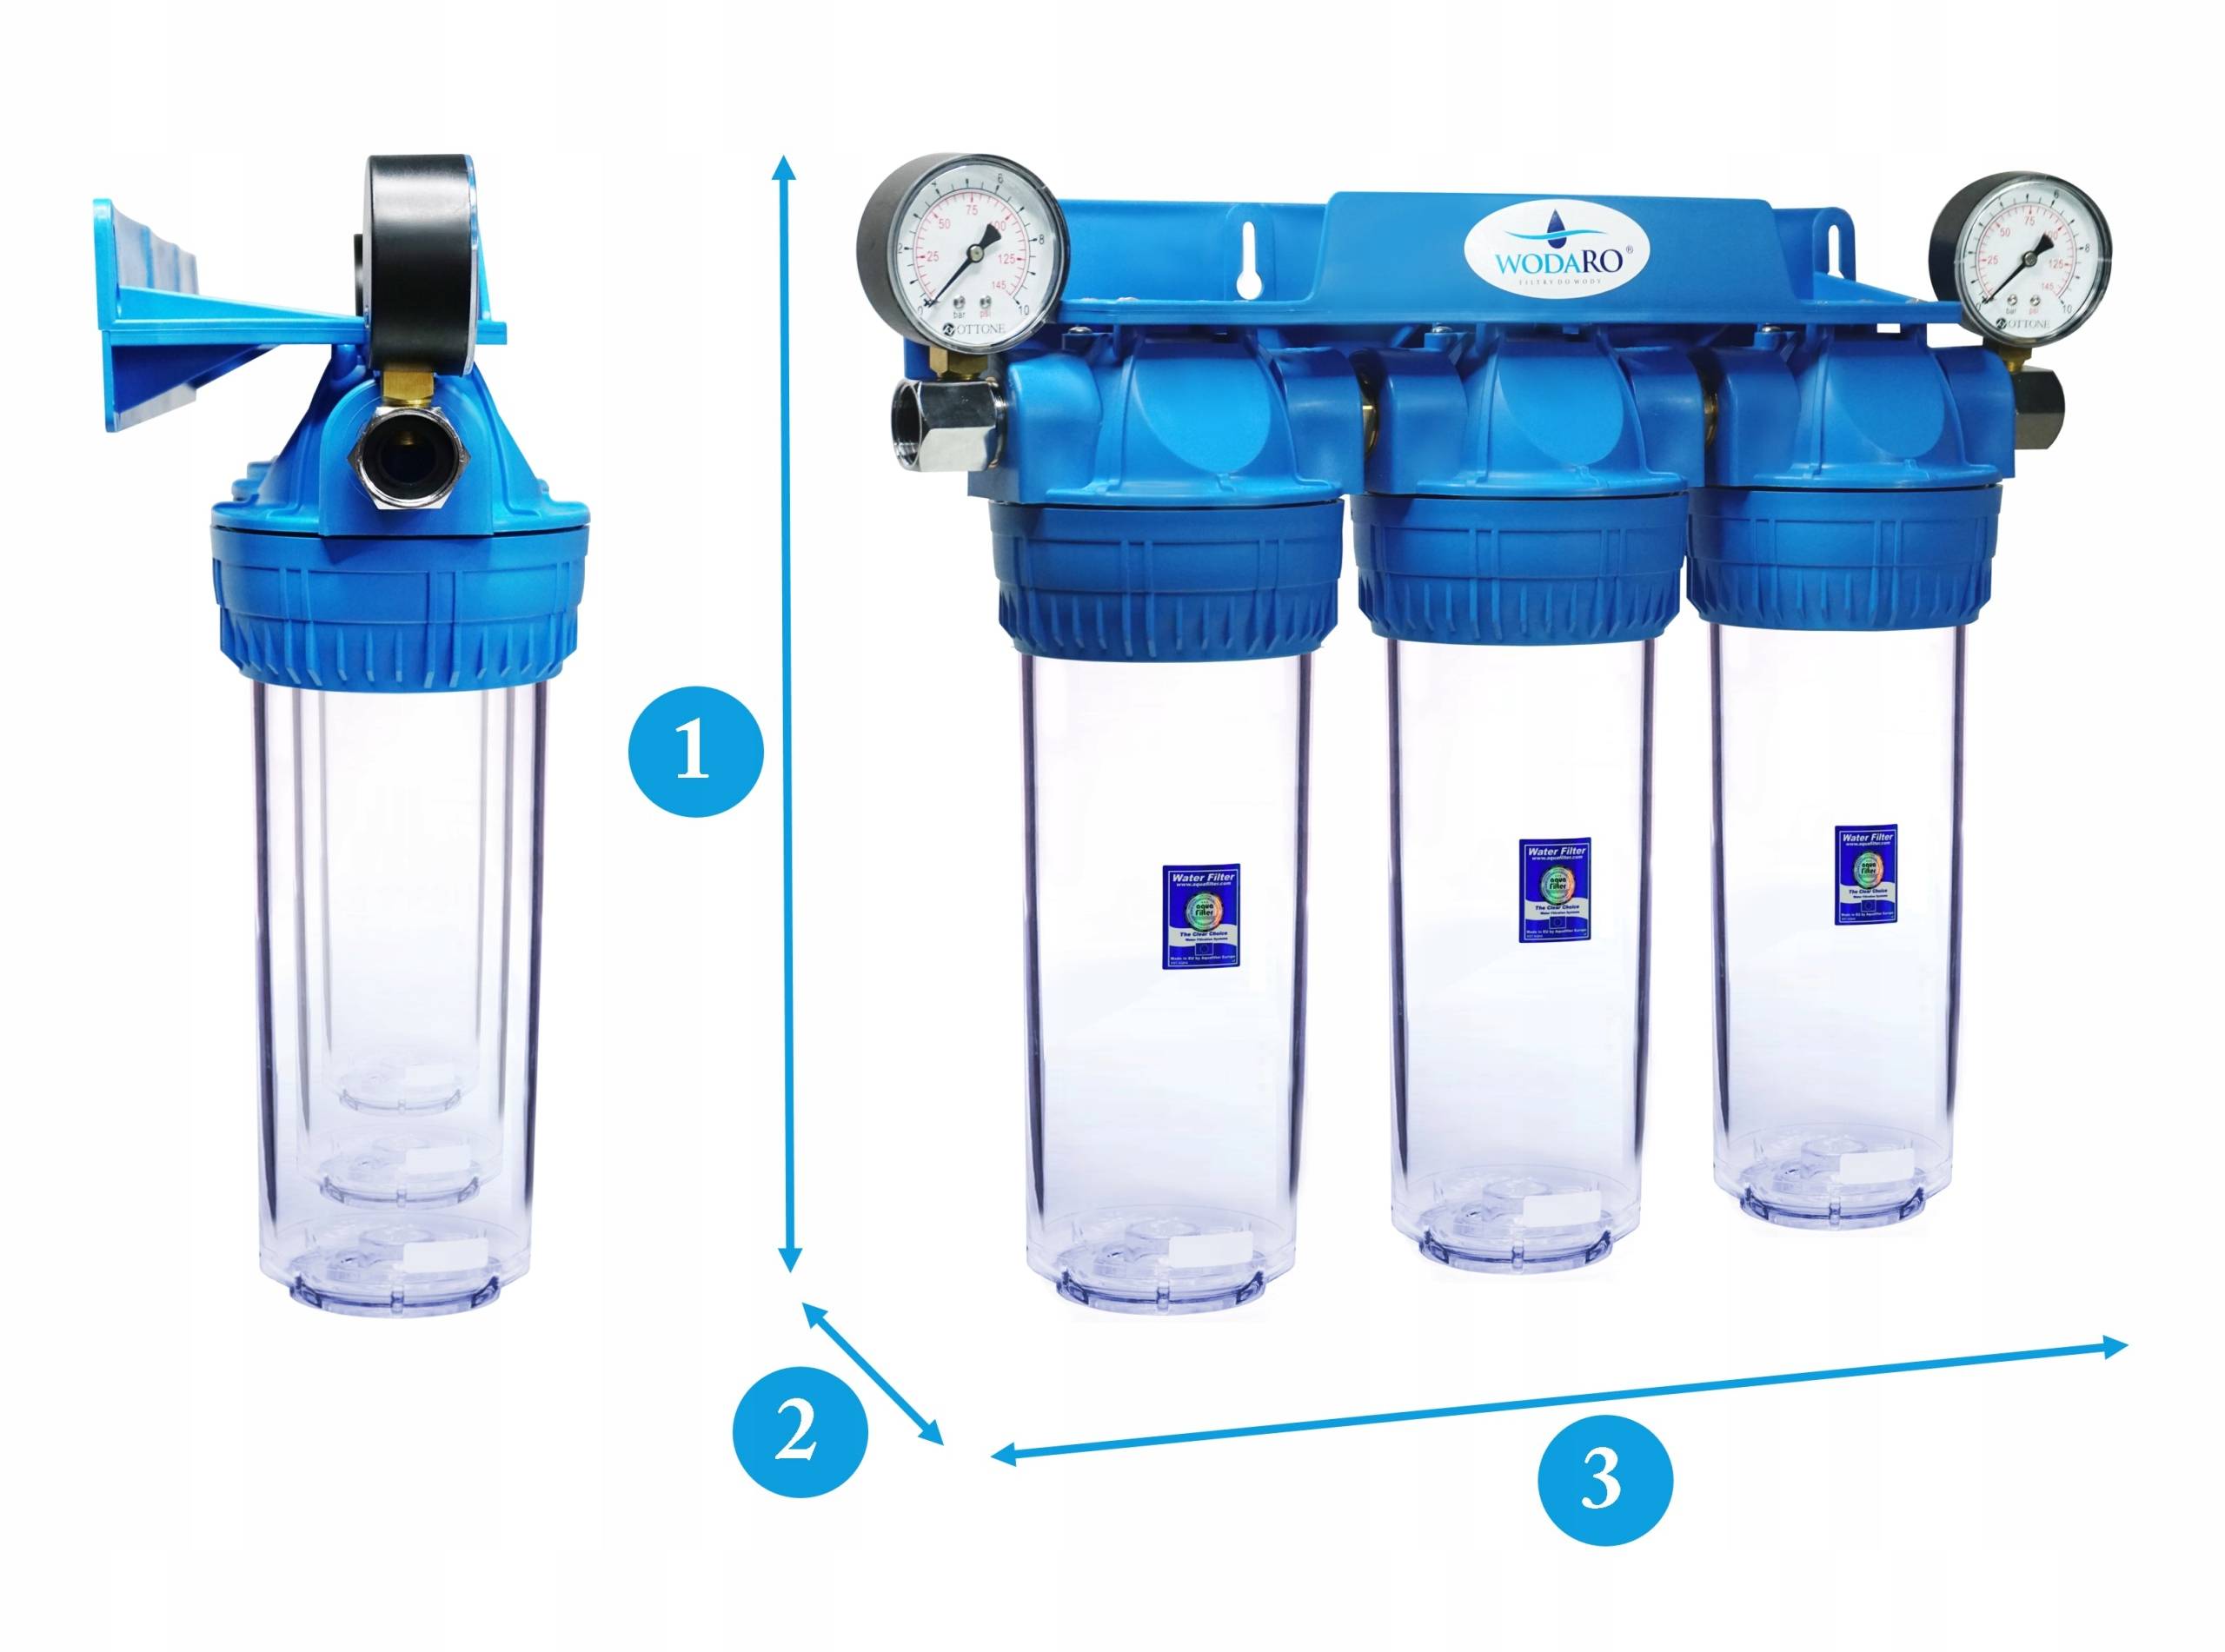 Питьевой фильтр для дома. 3-Х ступенчатый магистральный фильтр для воды. Трехступенчатый магистральный фильтр 103. Фильтр для воды 3 ступени. Магистральная система очистки воды из 3 фильтров.